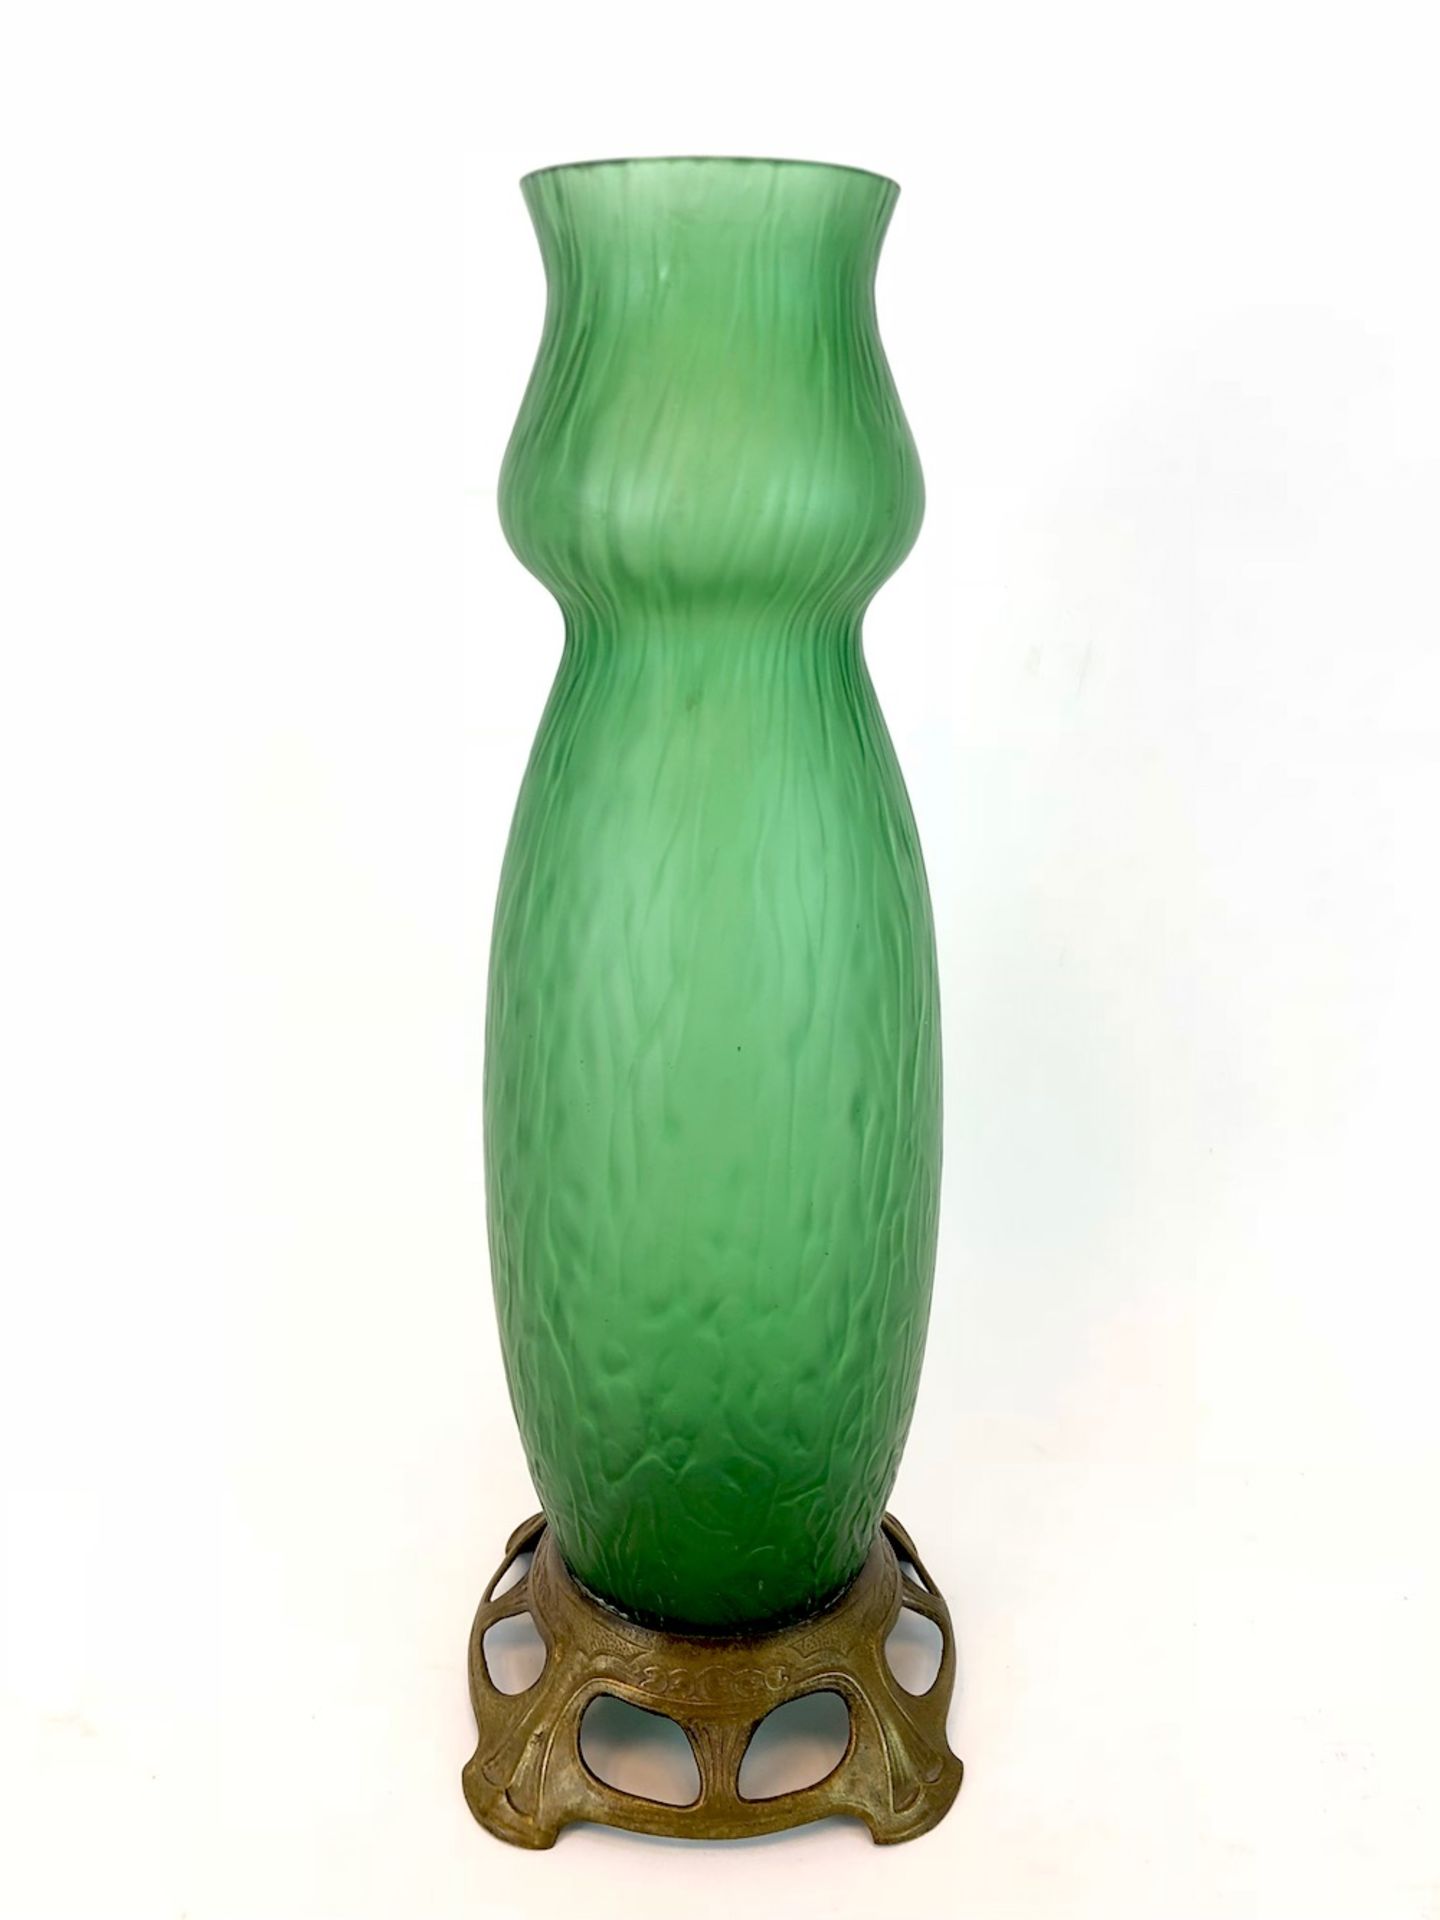 Formschöne Vase: Jugendstil Handarbeit.Grünes Glas aufwendig von Hand gearbeitet, hohe leicht - Bild 3 aus 3